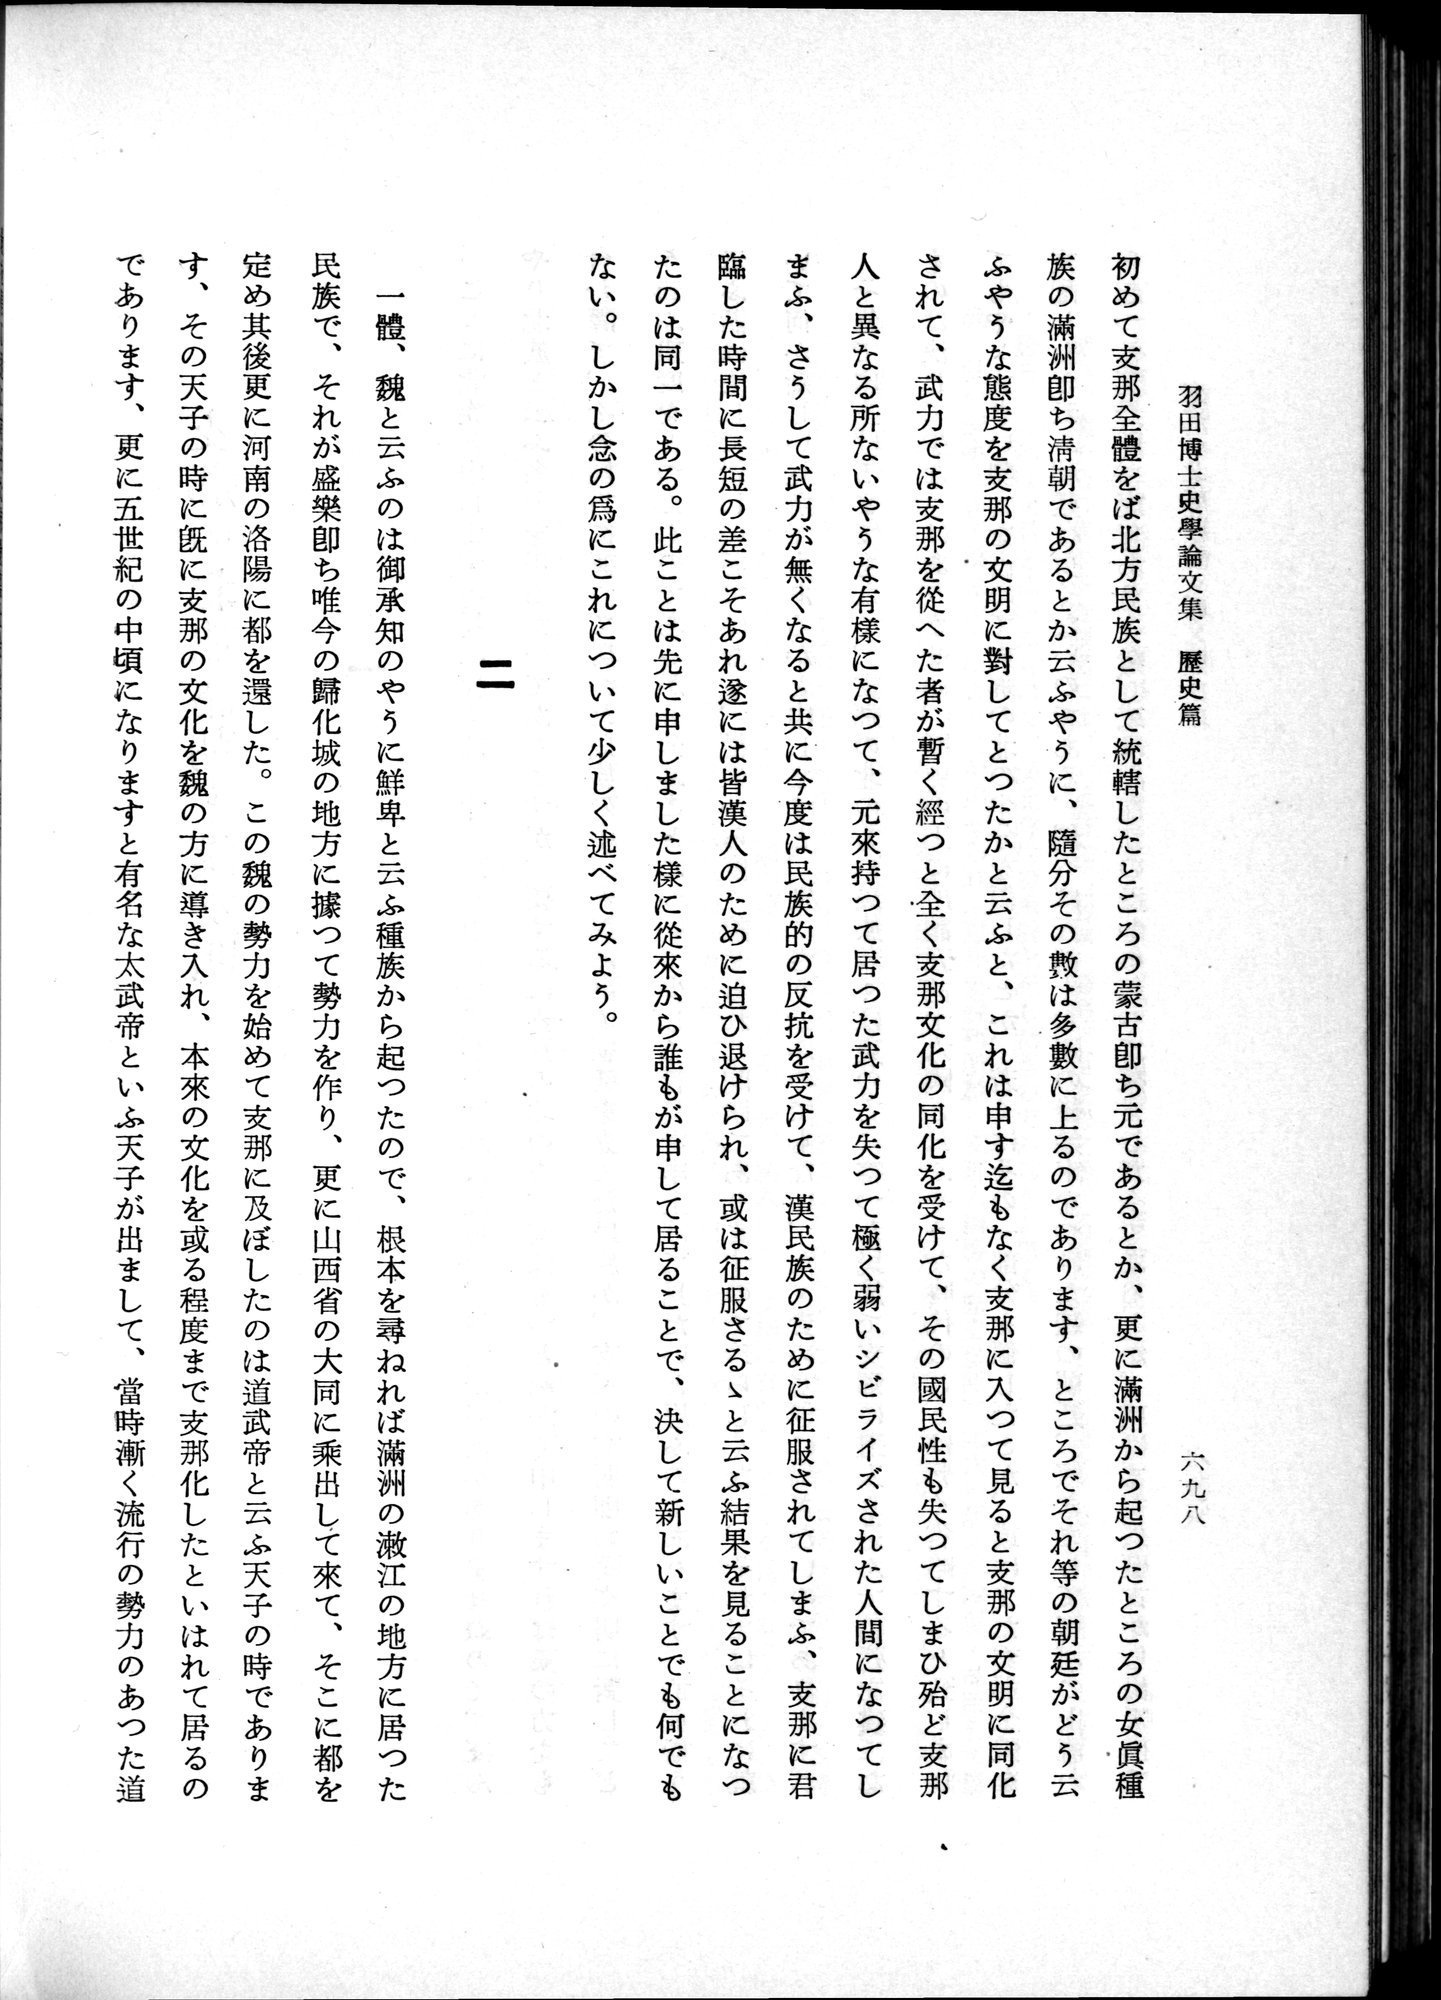 羽田博士史学論文集 : vol.1 / Page 736 (Grayscale High Resolution Image)